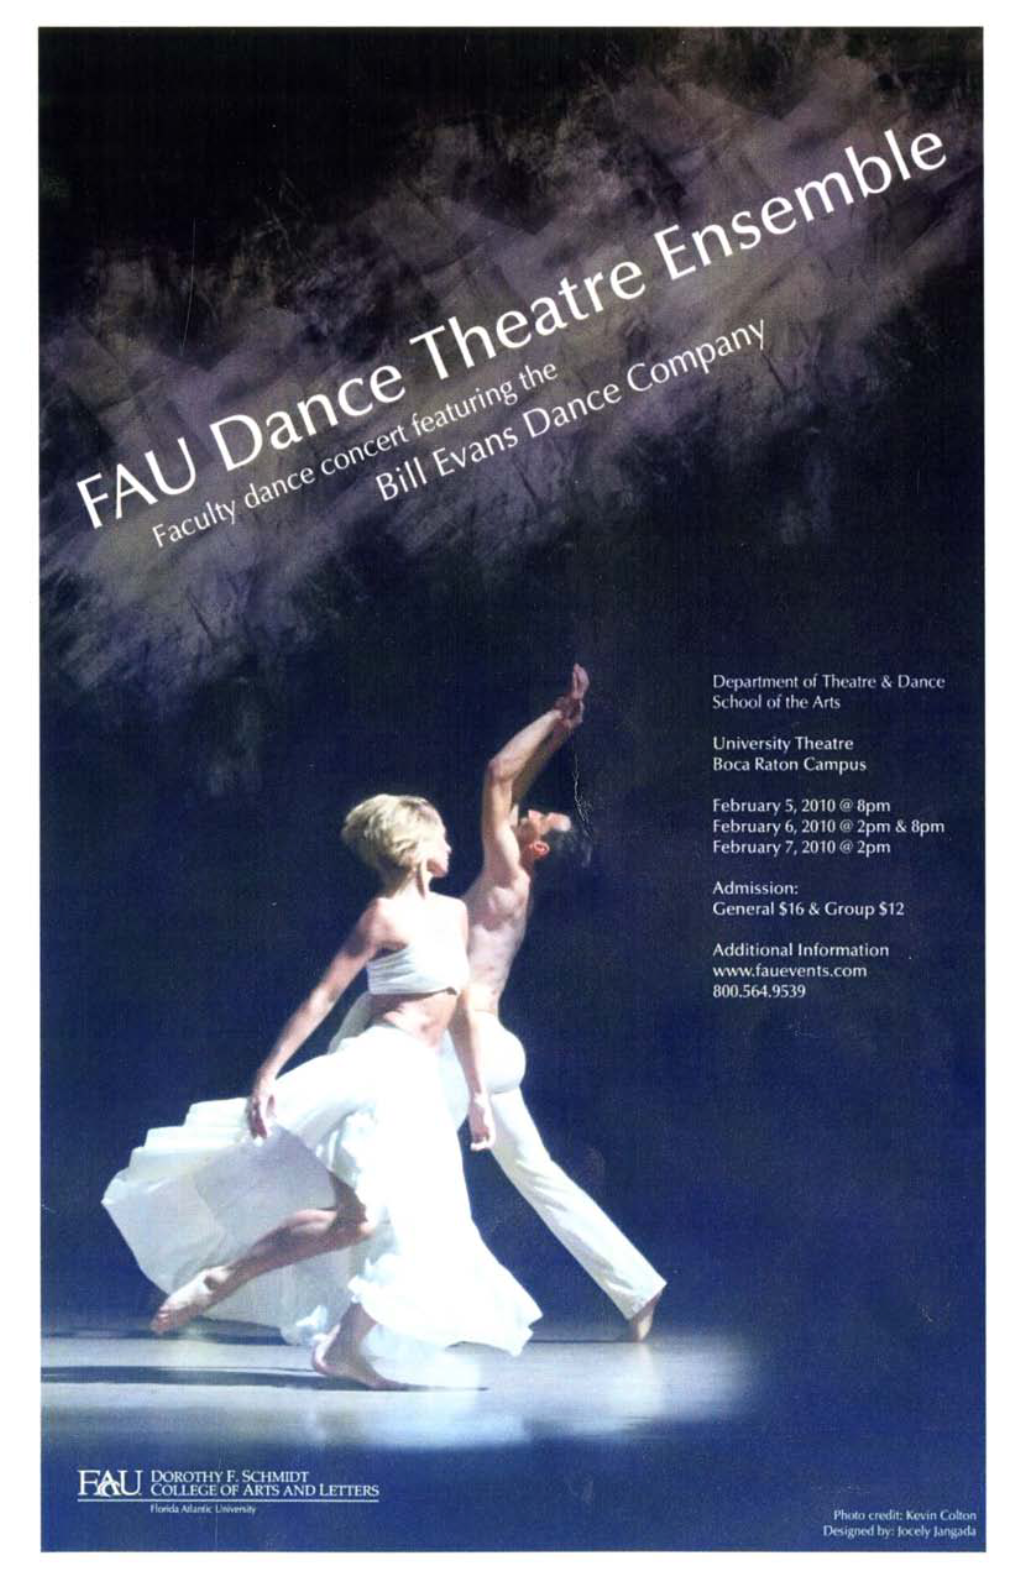 FAD Dance Theatre Ensemble